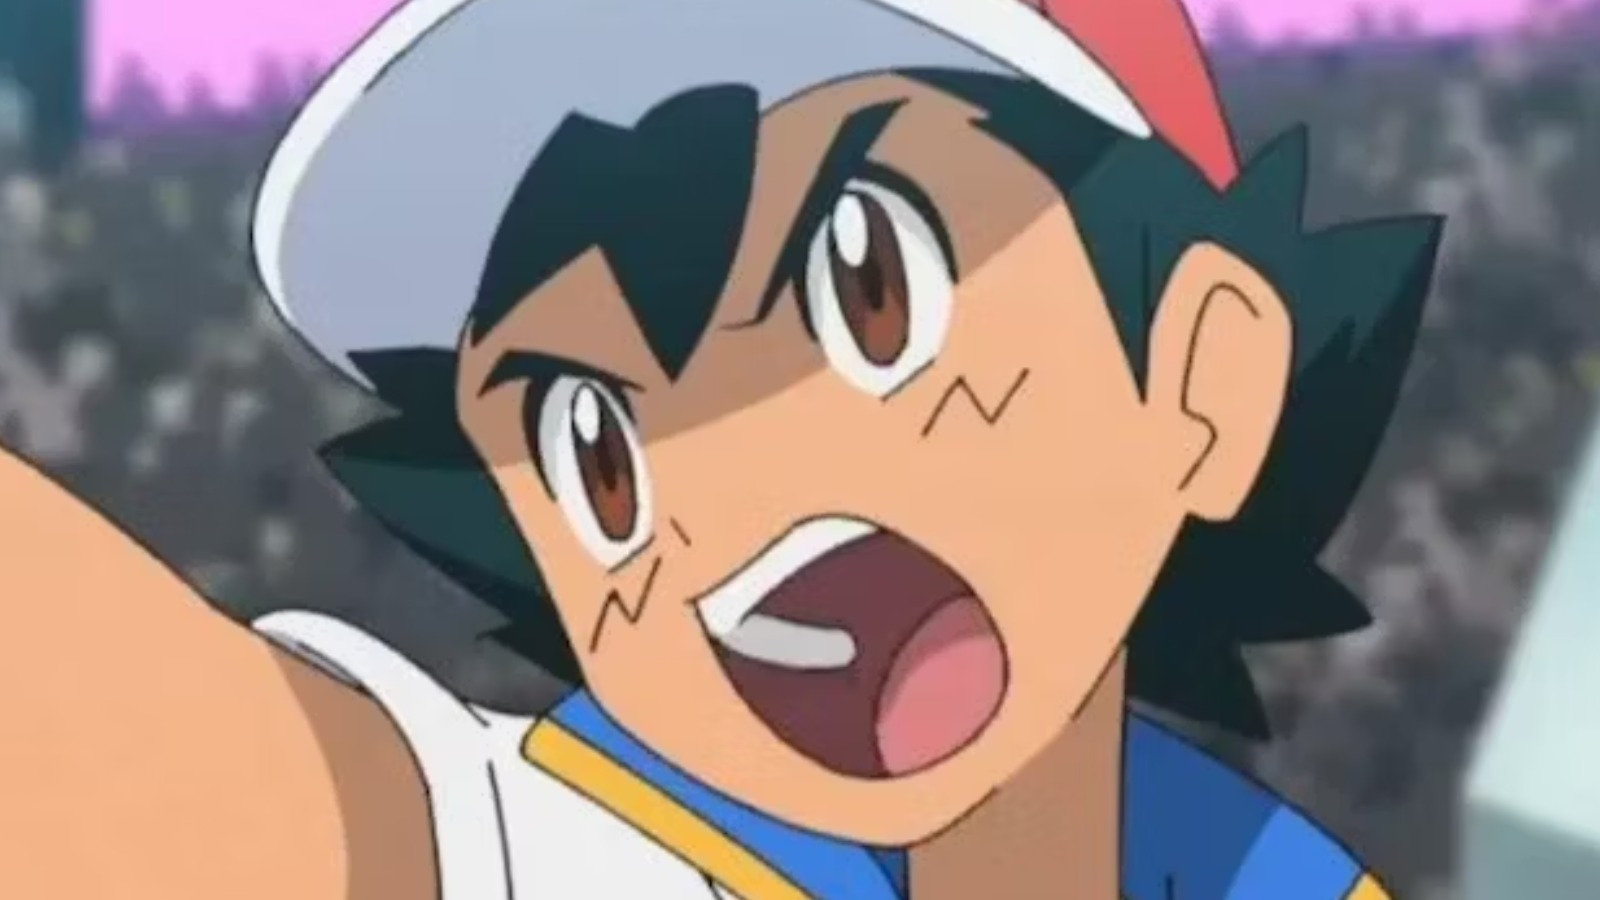 Ash Ketchum's voice actor talks about Pokémon's future without its